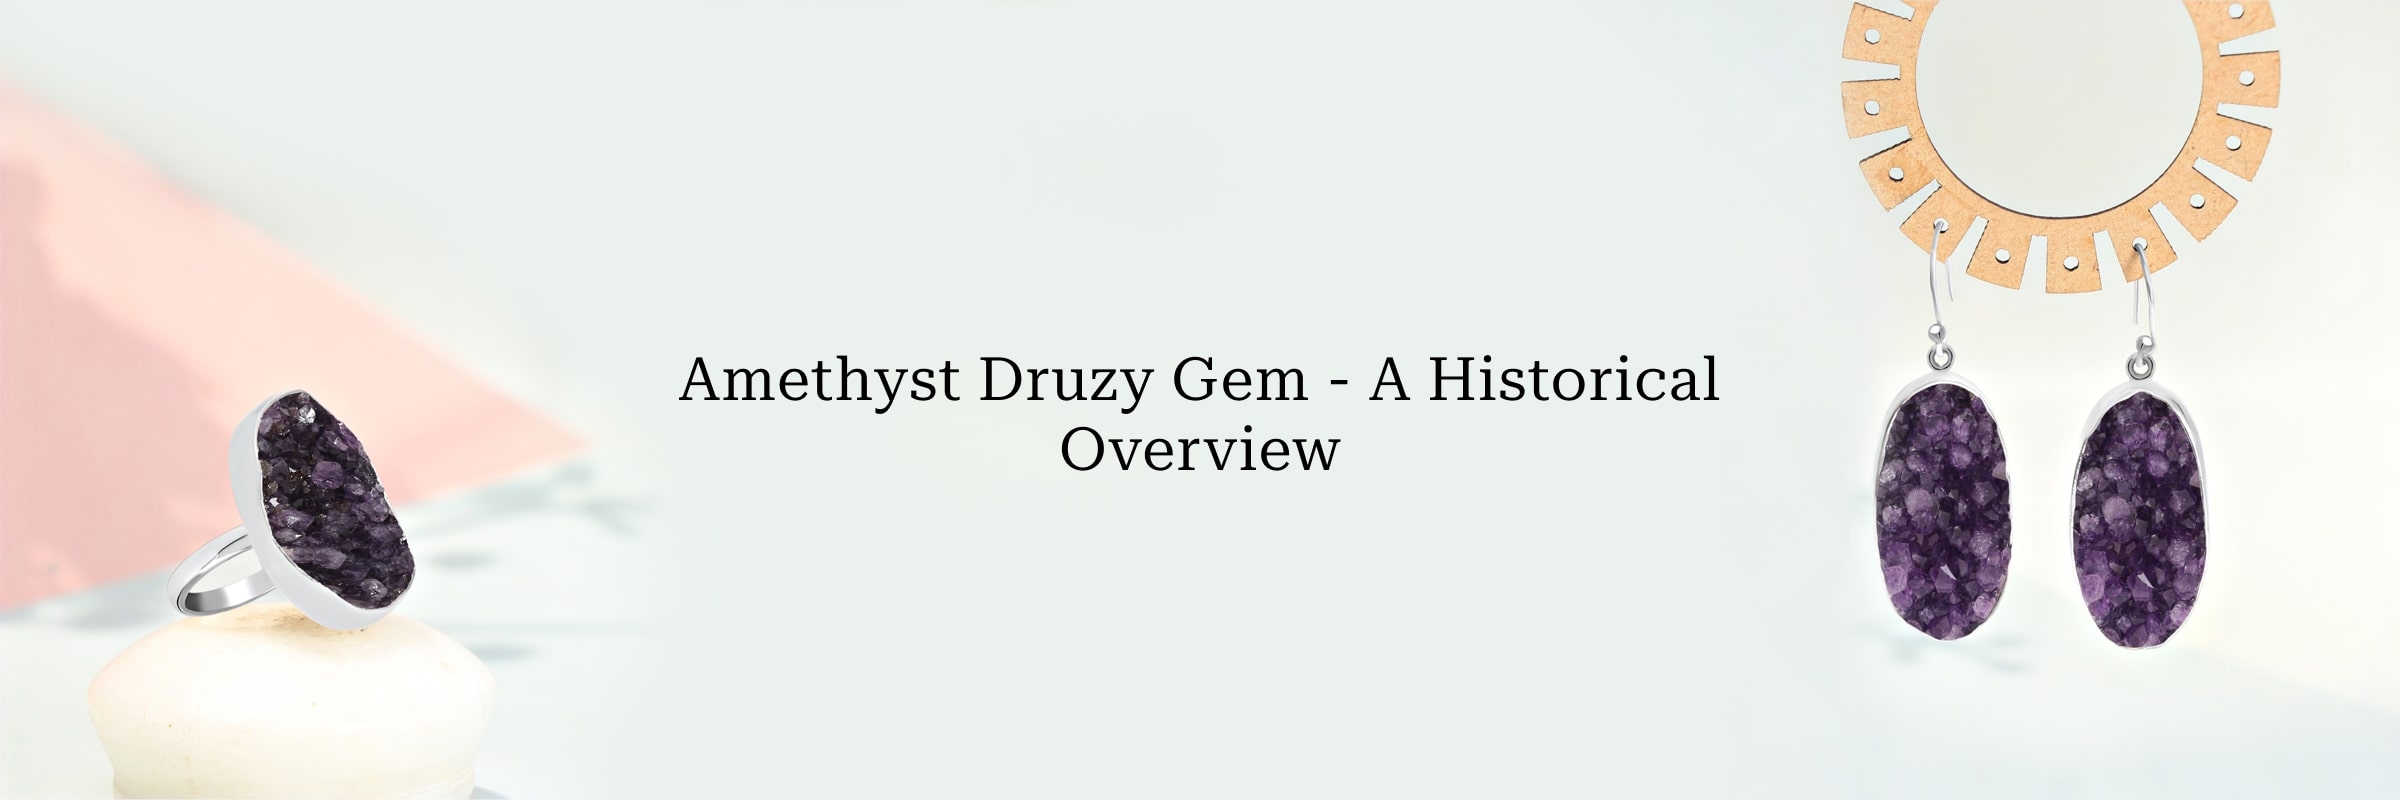 History of Amethyst Druzy Gem